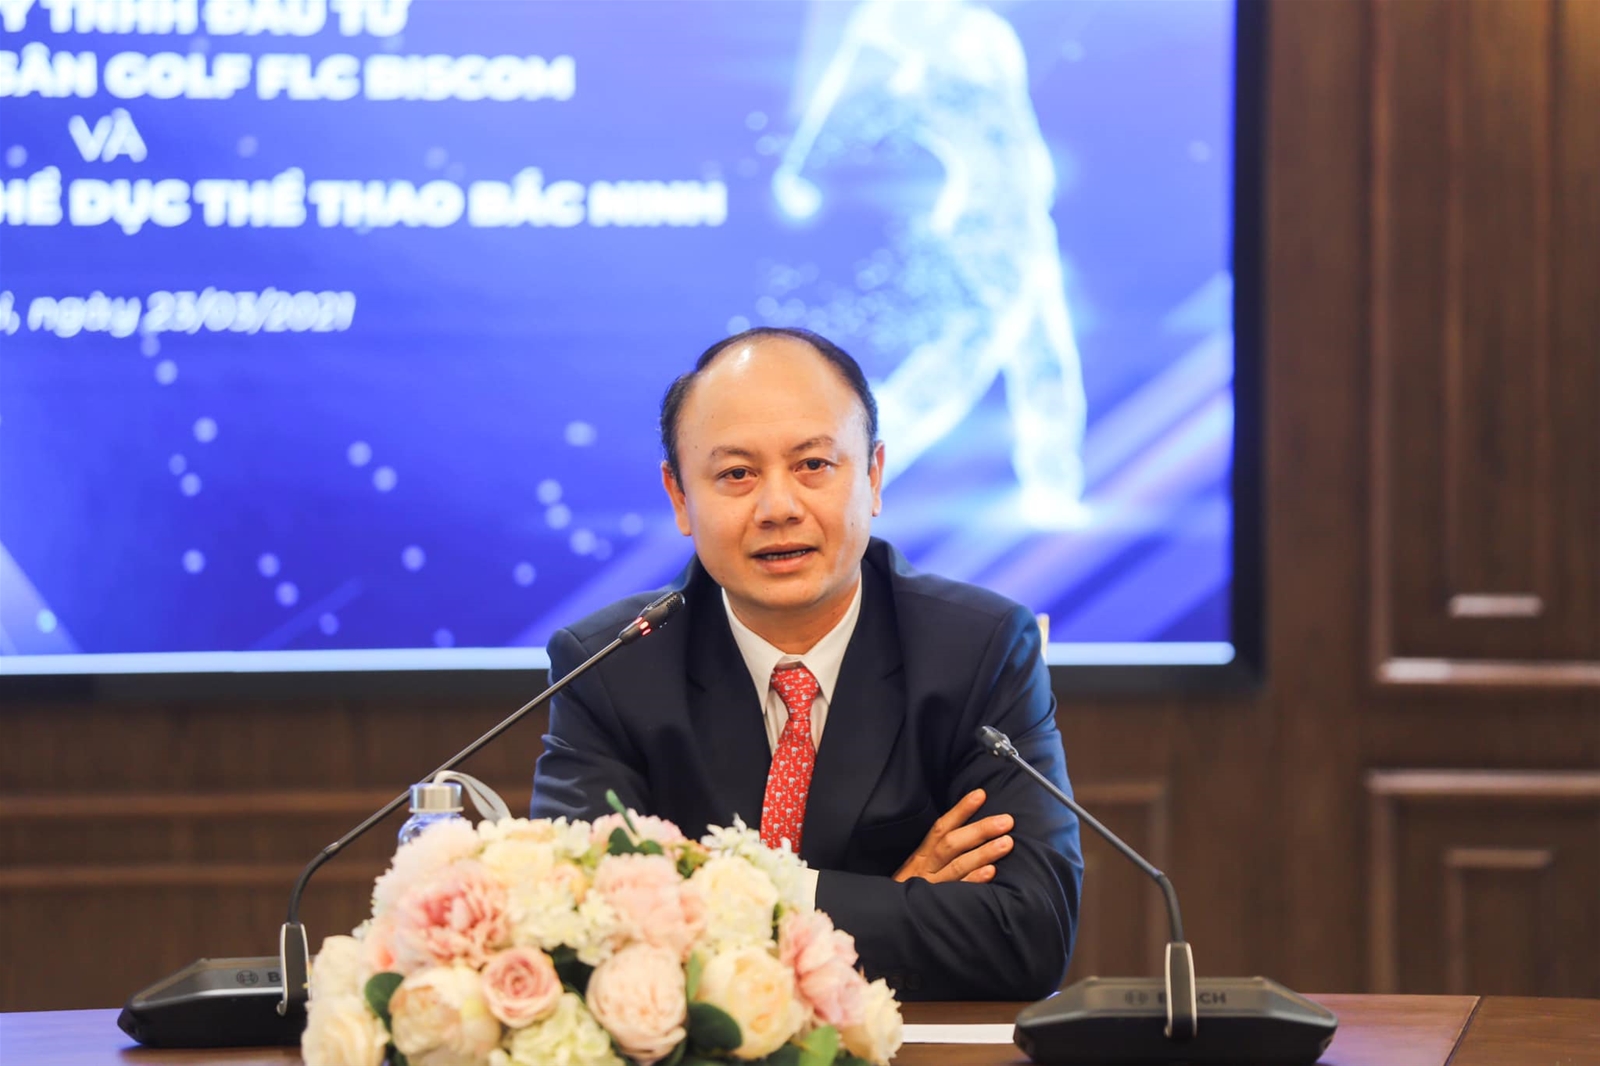 Trường Đại học TDTT Bắc Ninh ký kết thỏa thuận hợp tác với FLC Biscom  - Ảnh 4.